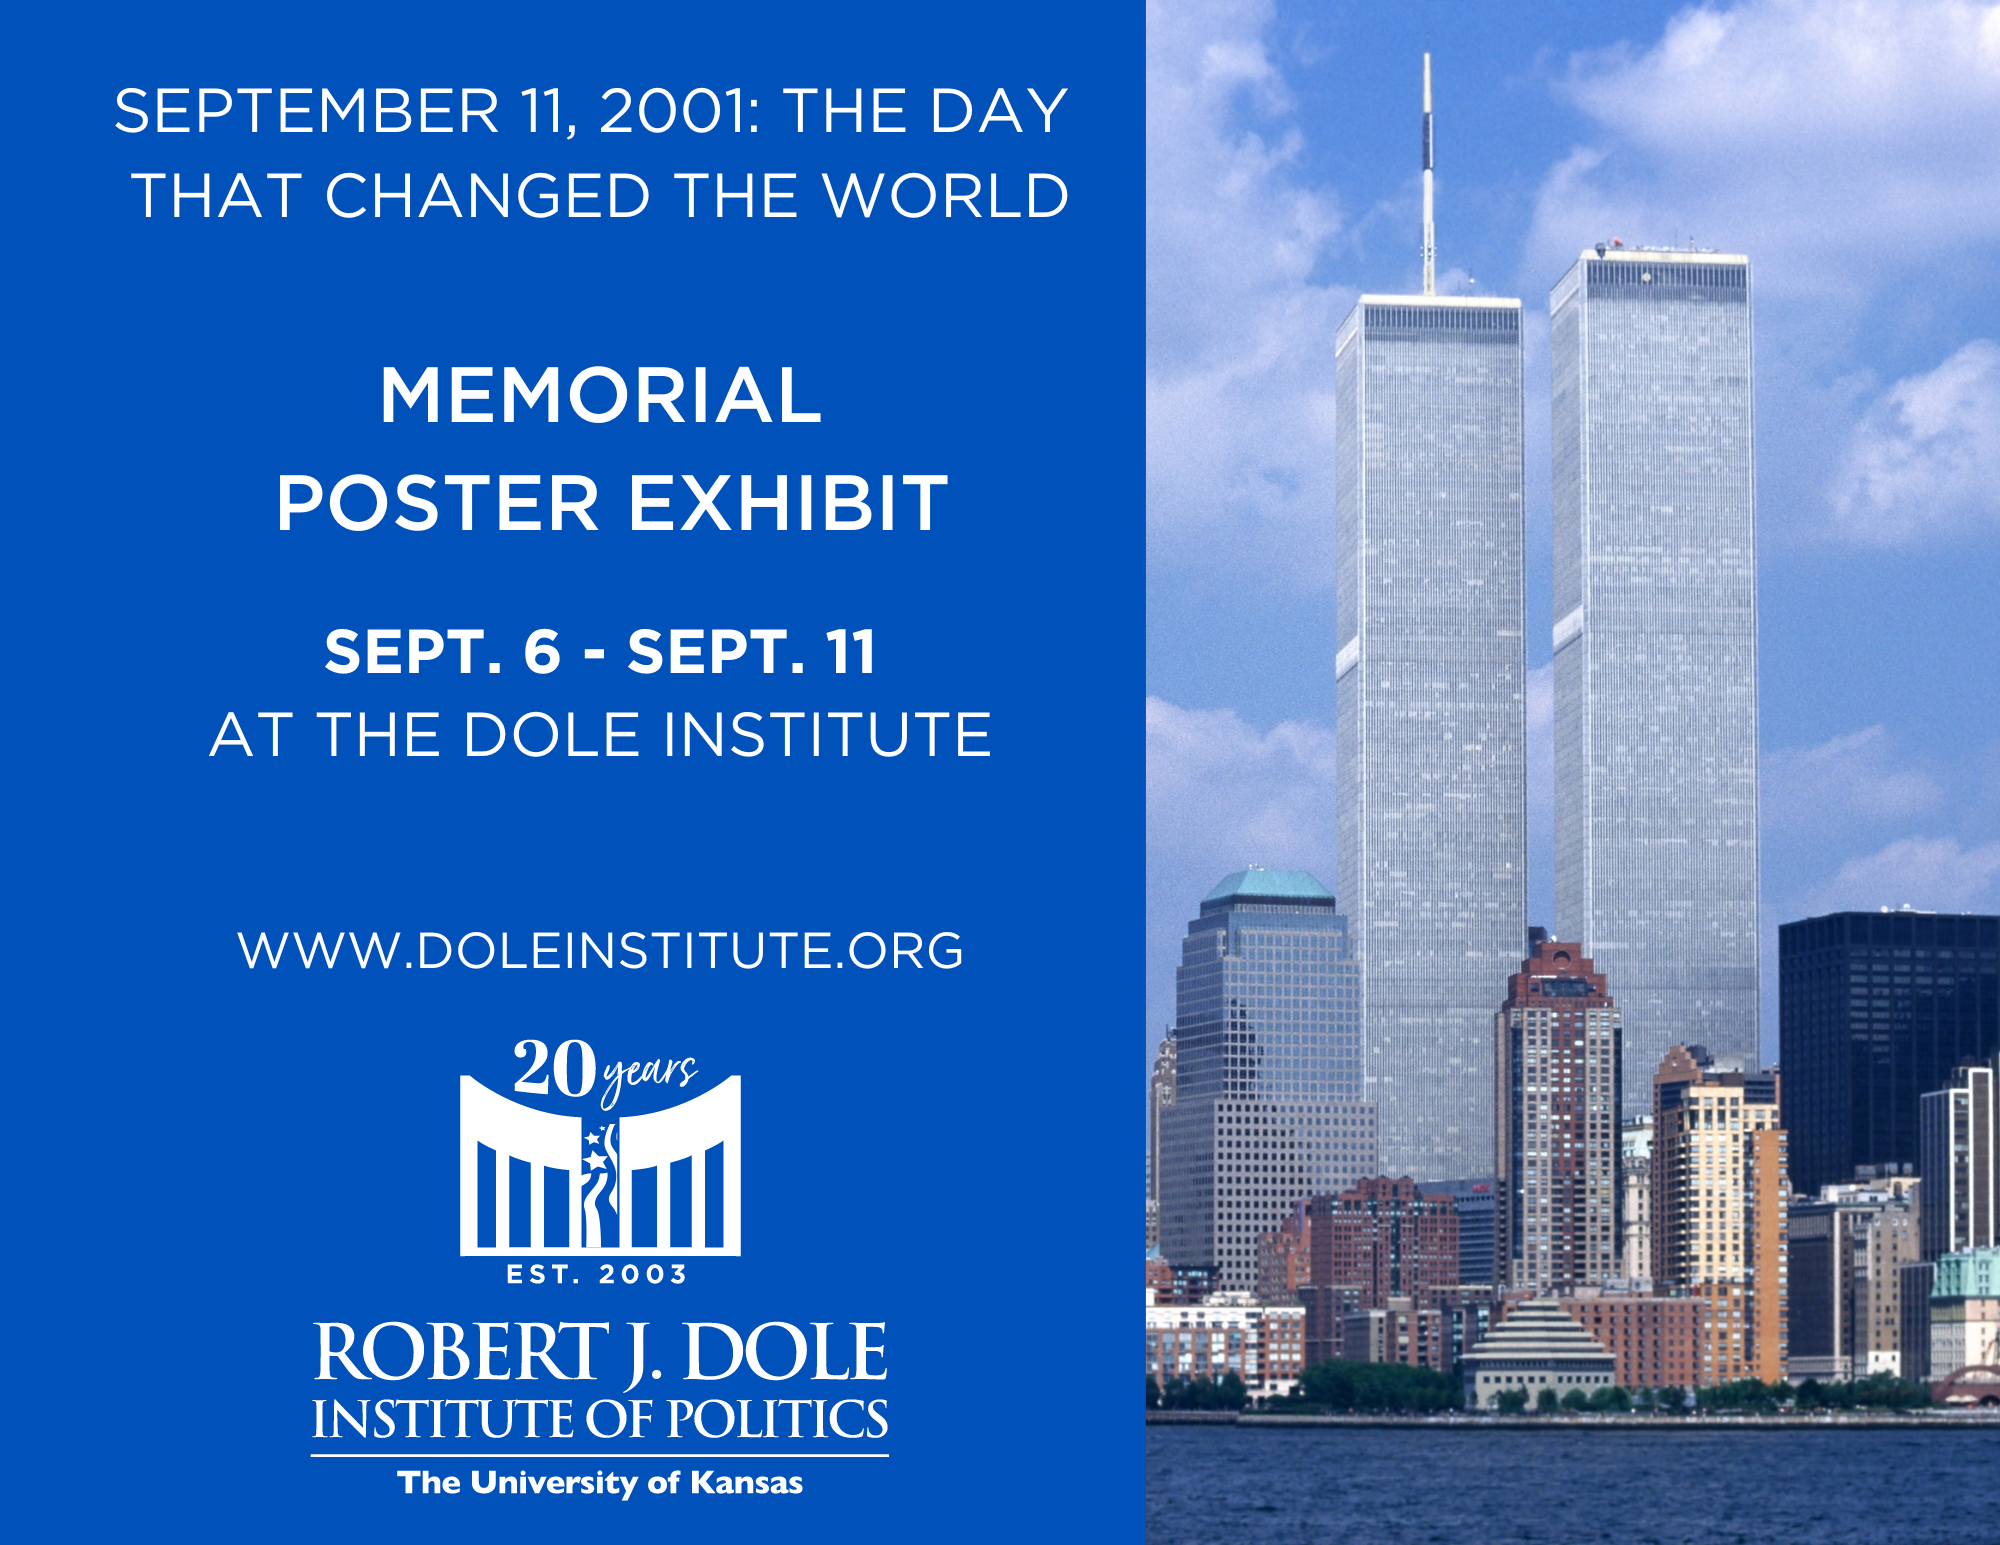 9-11 Memorial Poster Exhibit